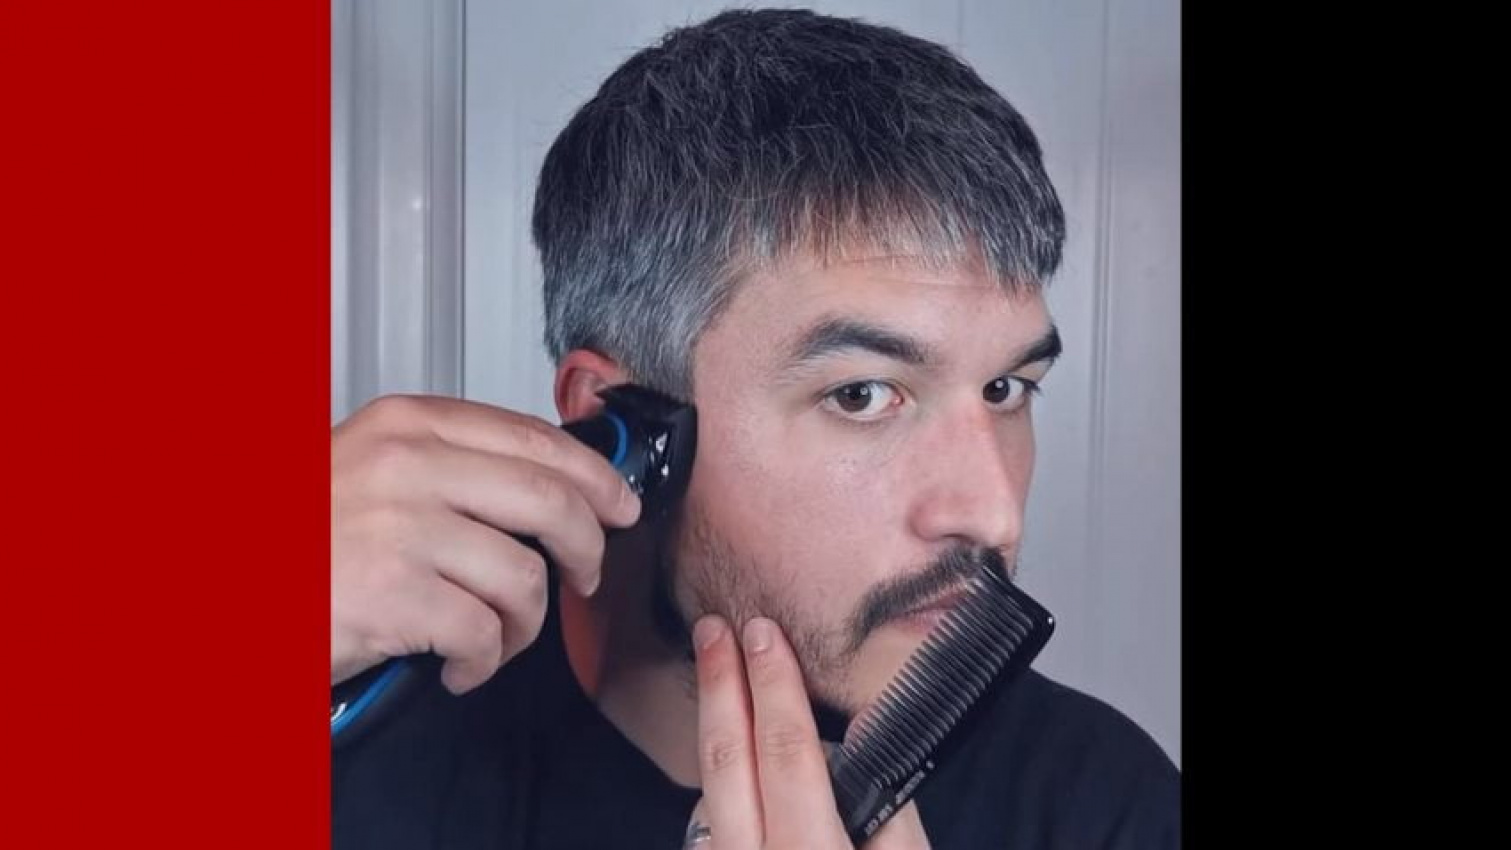 Hướng dẫn tự cắt tóc tại nhà cho nam | Hy vọng mọi thứ rồi sẽ sớm trở lại  bình thường - YouTube